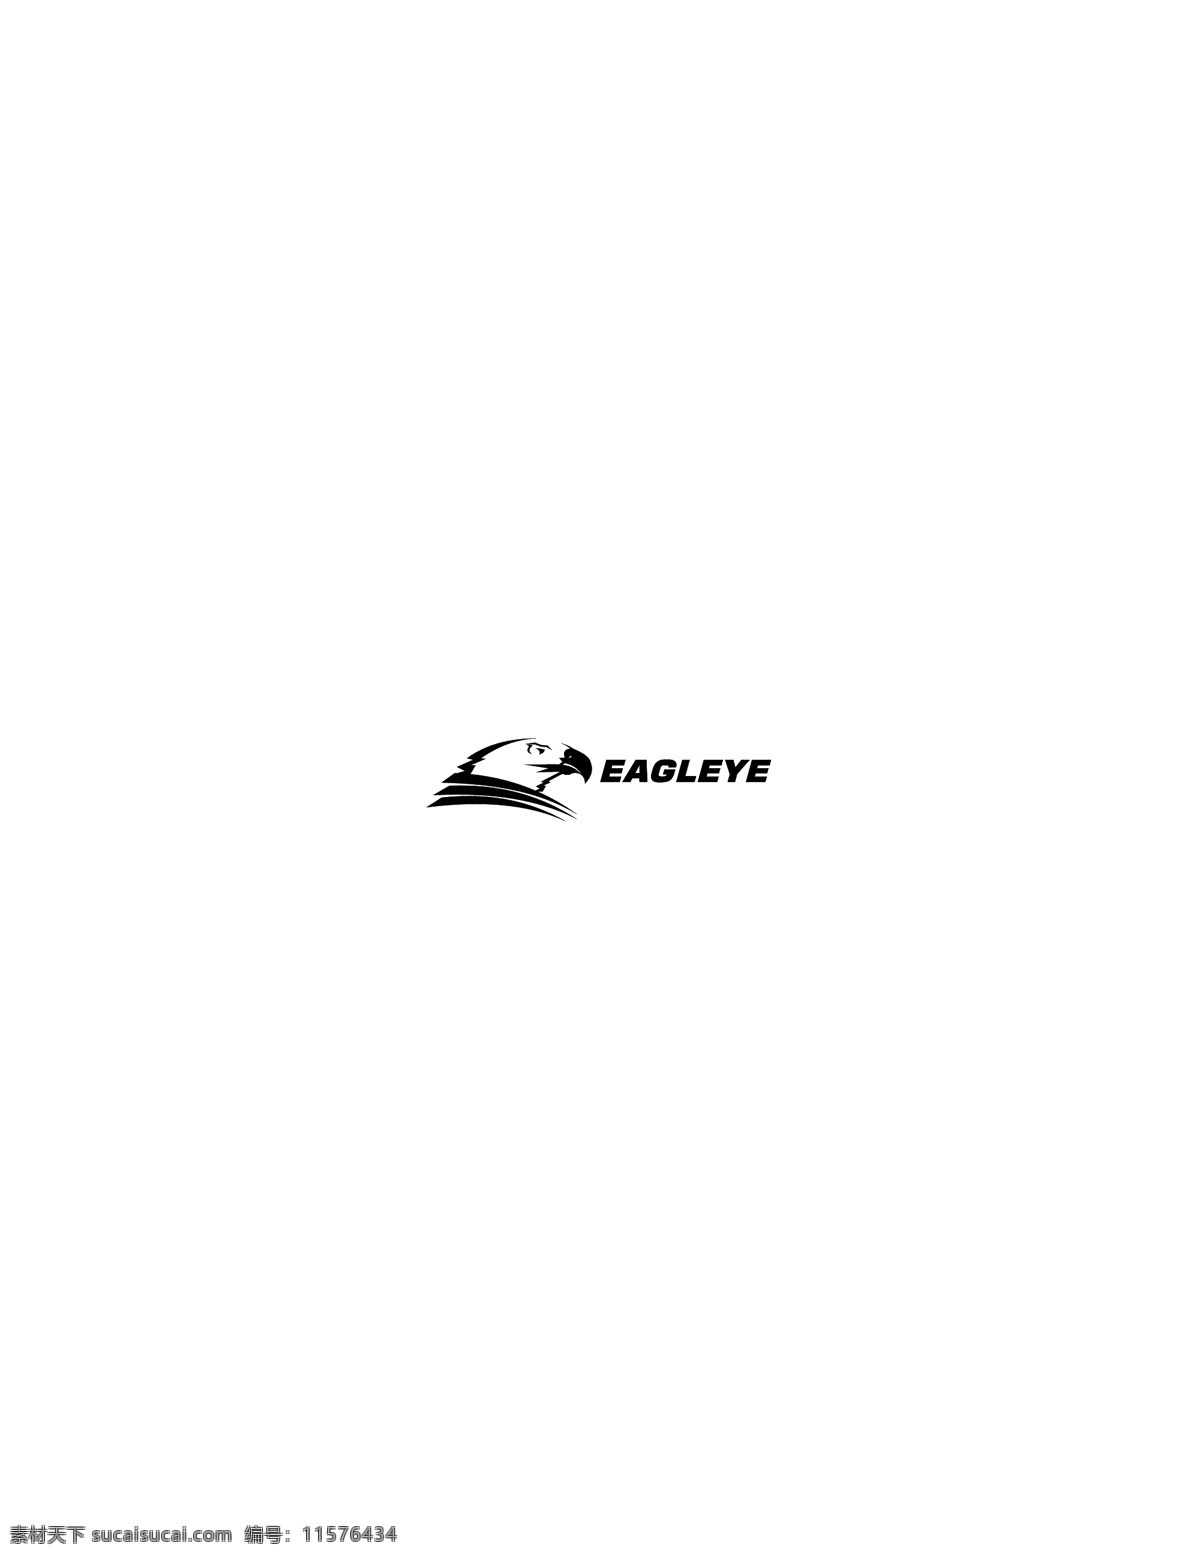 eagleye logo大全 logo 设计欣赏 商业矢量 矢量下载 矢量 汽车 标志 标志设计 欣赏 网页矢量 矢量图 其他矢量图